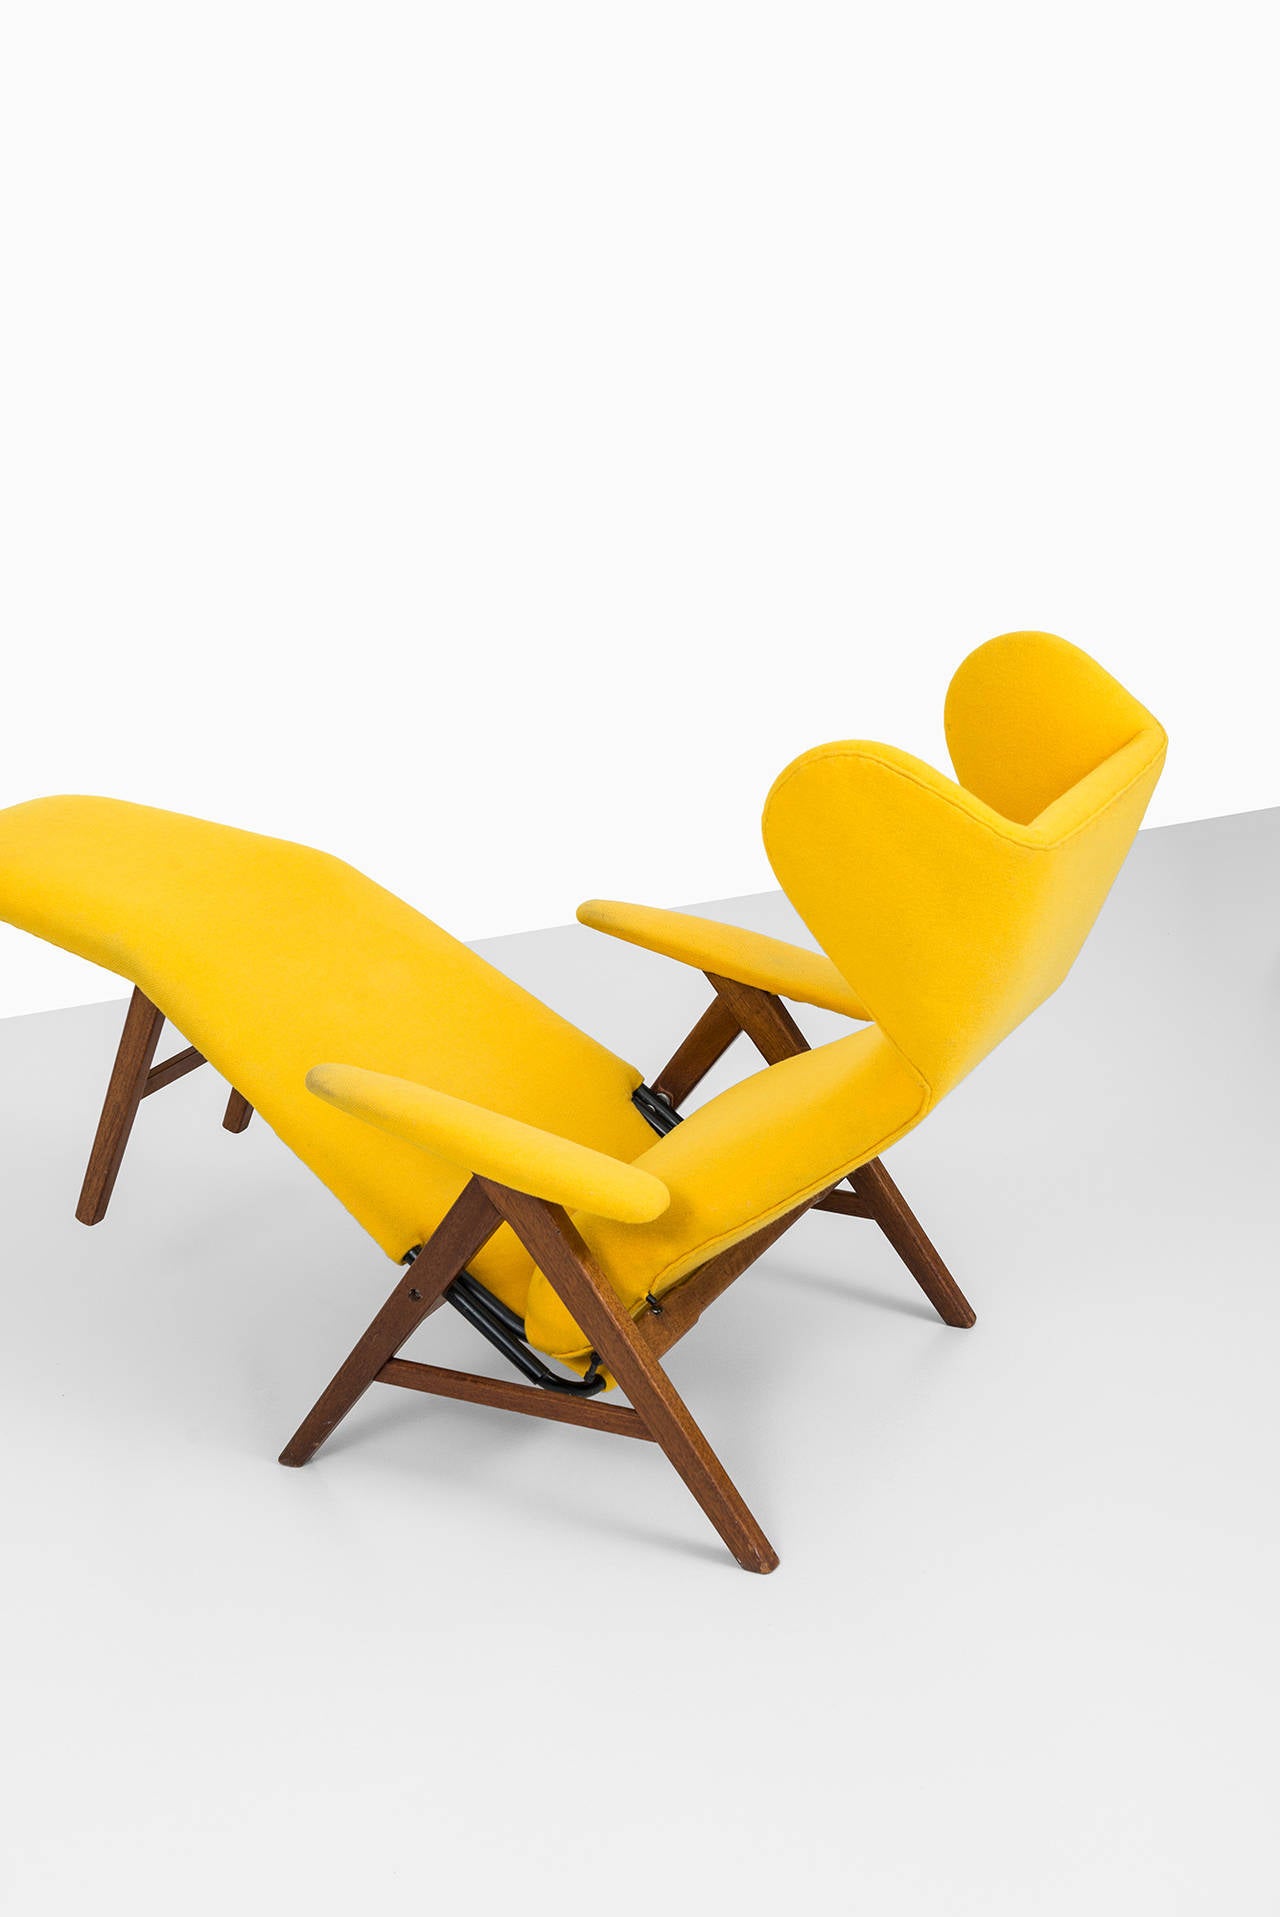 Danish H.W Klein reclining chair by Bramin møbler in Denmark